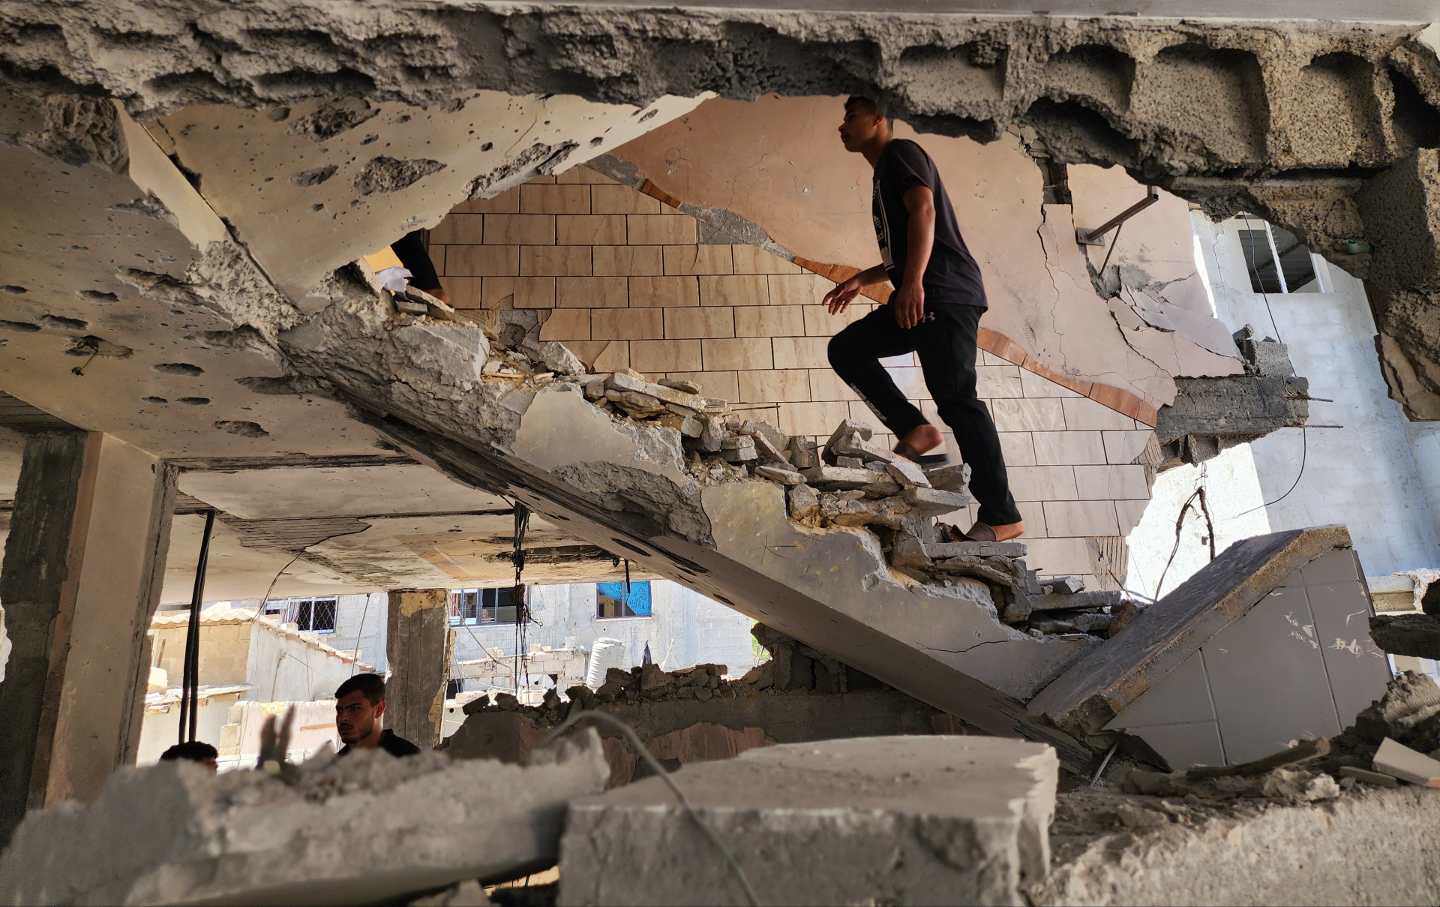 35 viktima në Rafah nga sulmet ajrore izraelite pas vendimit të GJND-së!